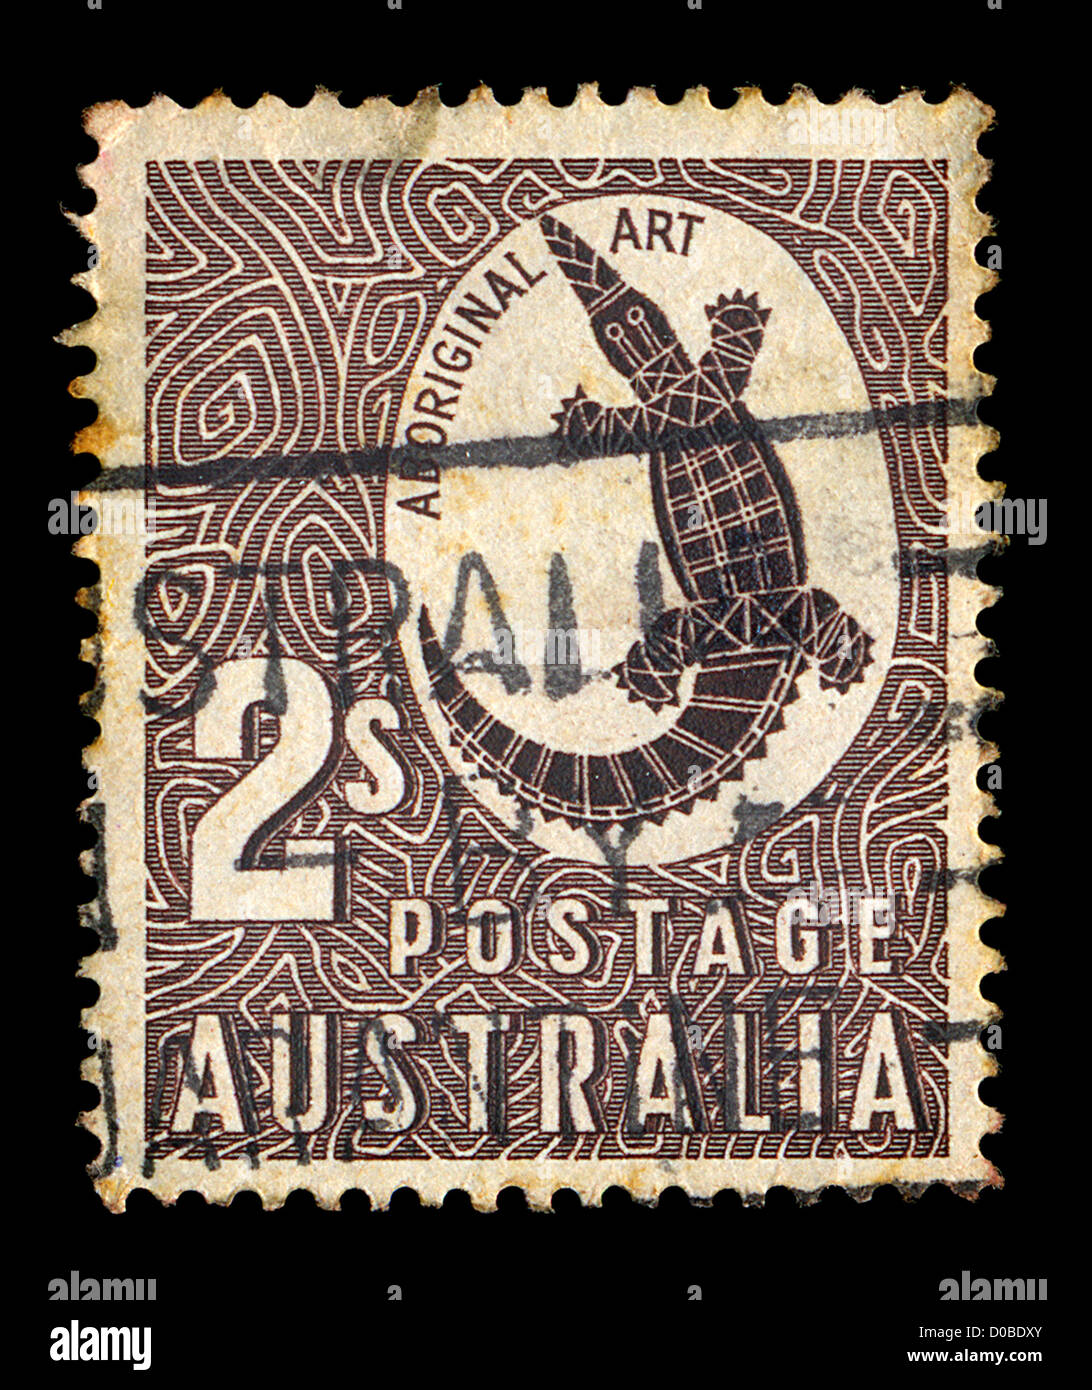 Timbre Vintage imprimé par la poste australienne avec les autochtones de la sculpture art rock un crocodile illustration, vers 1948. Banque D'Images